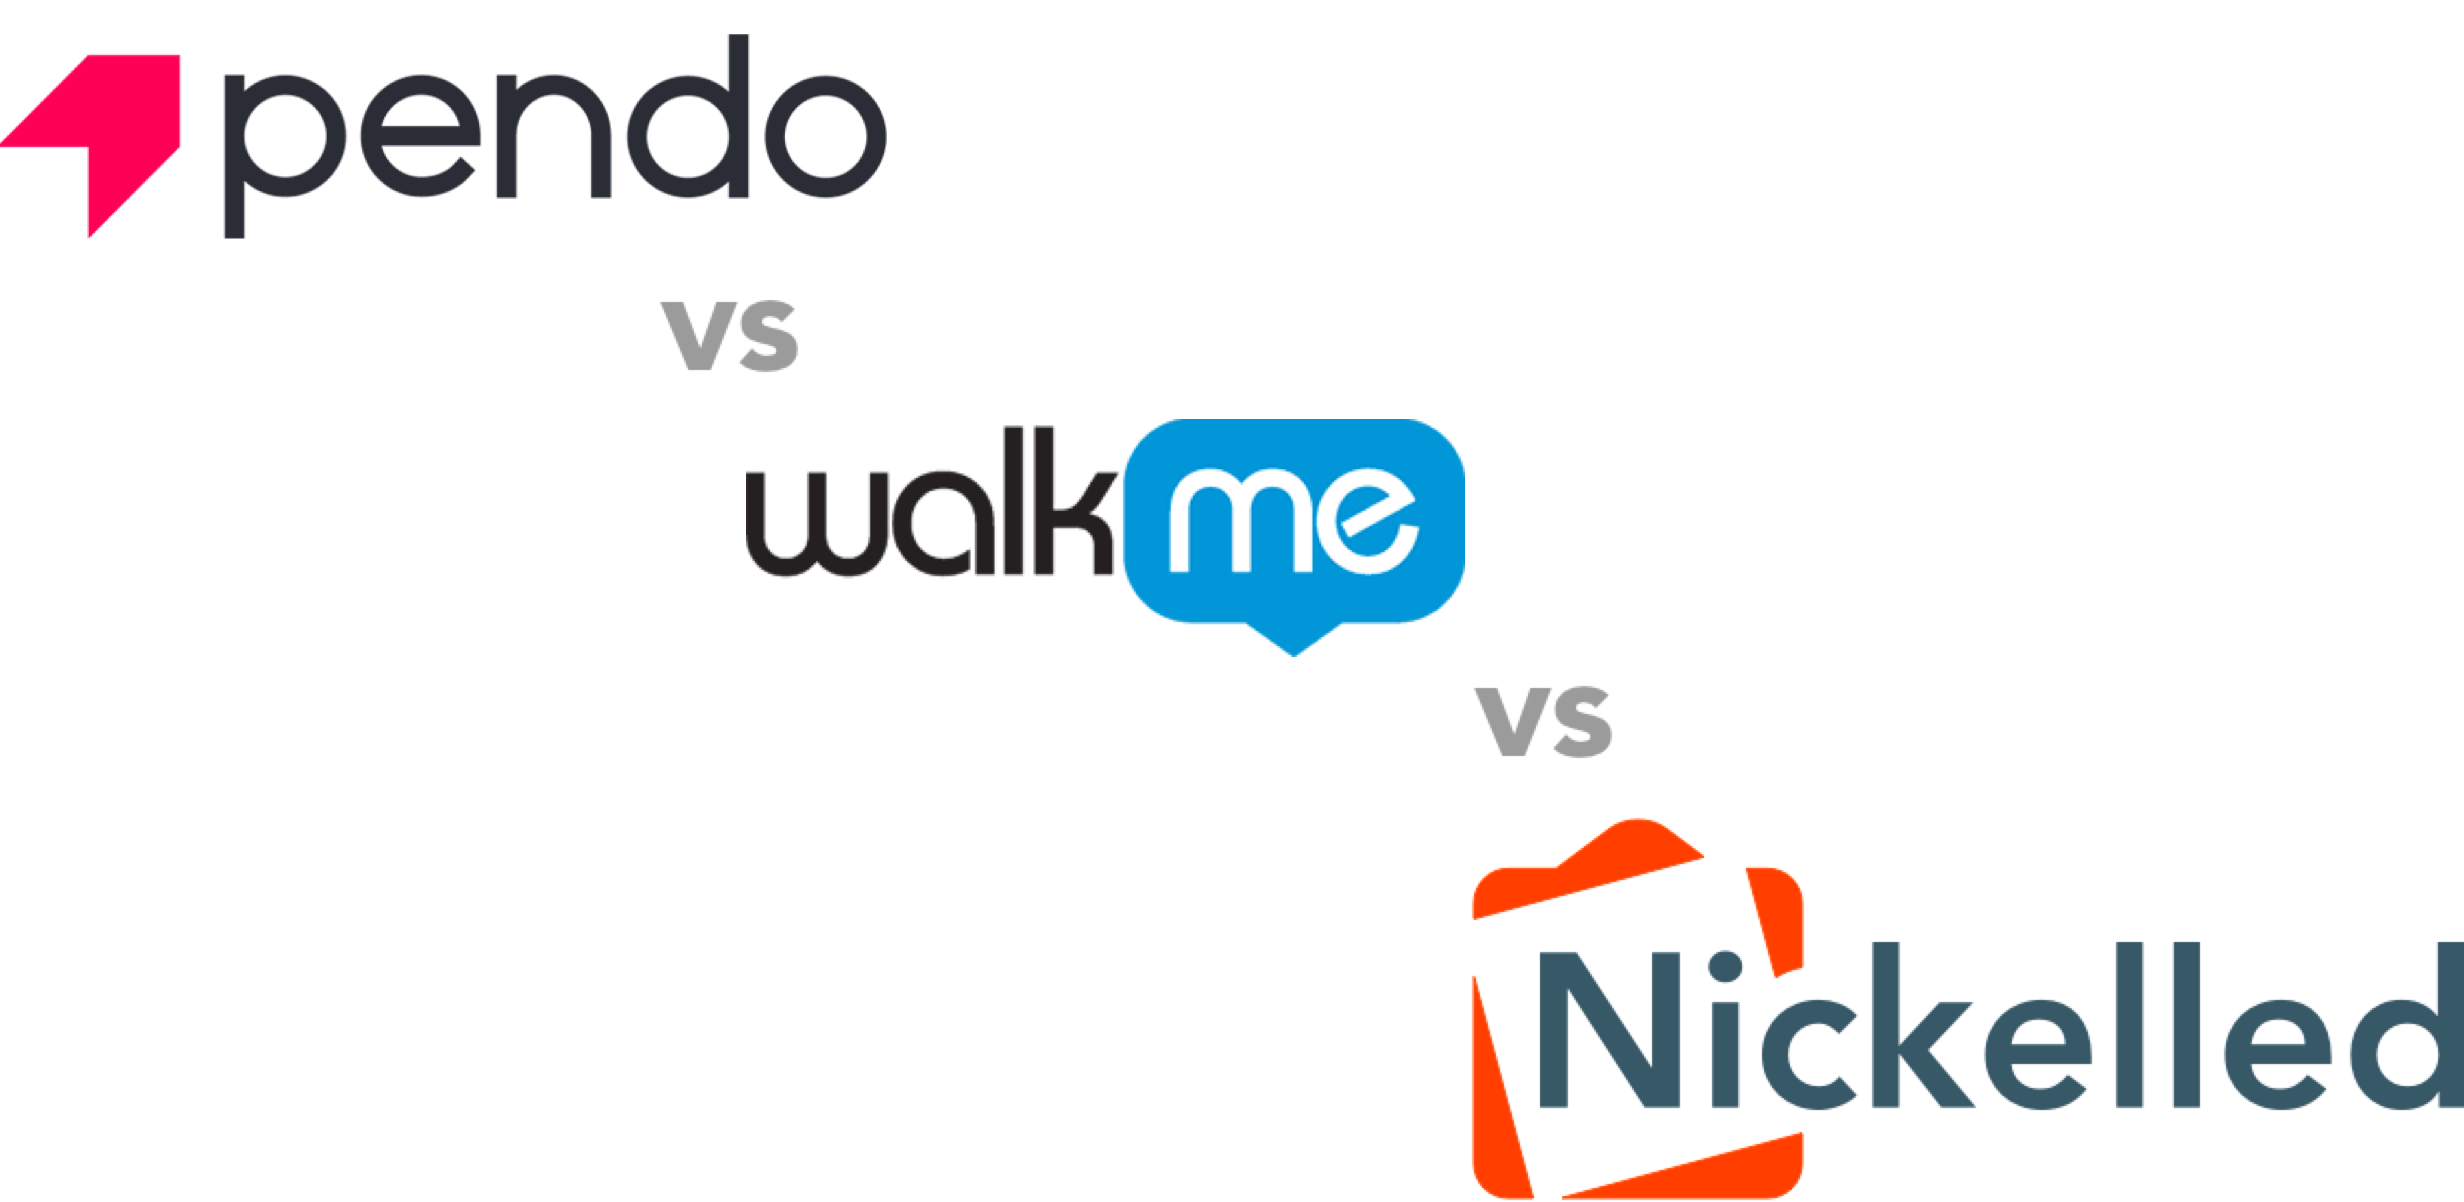 Pendo vs WalkMe hero image